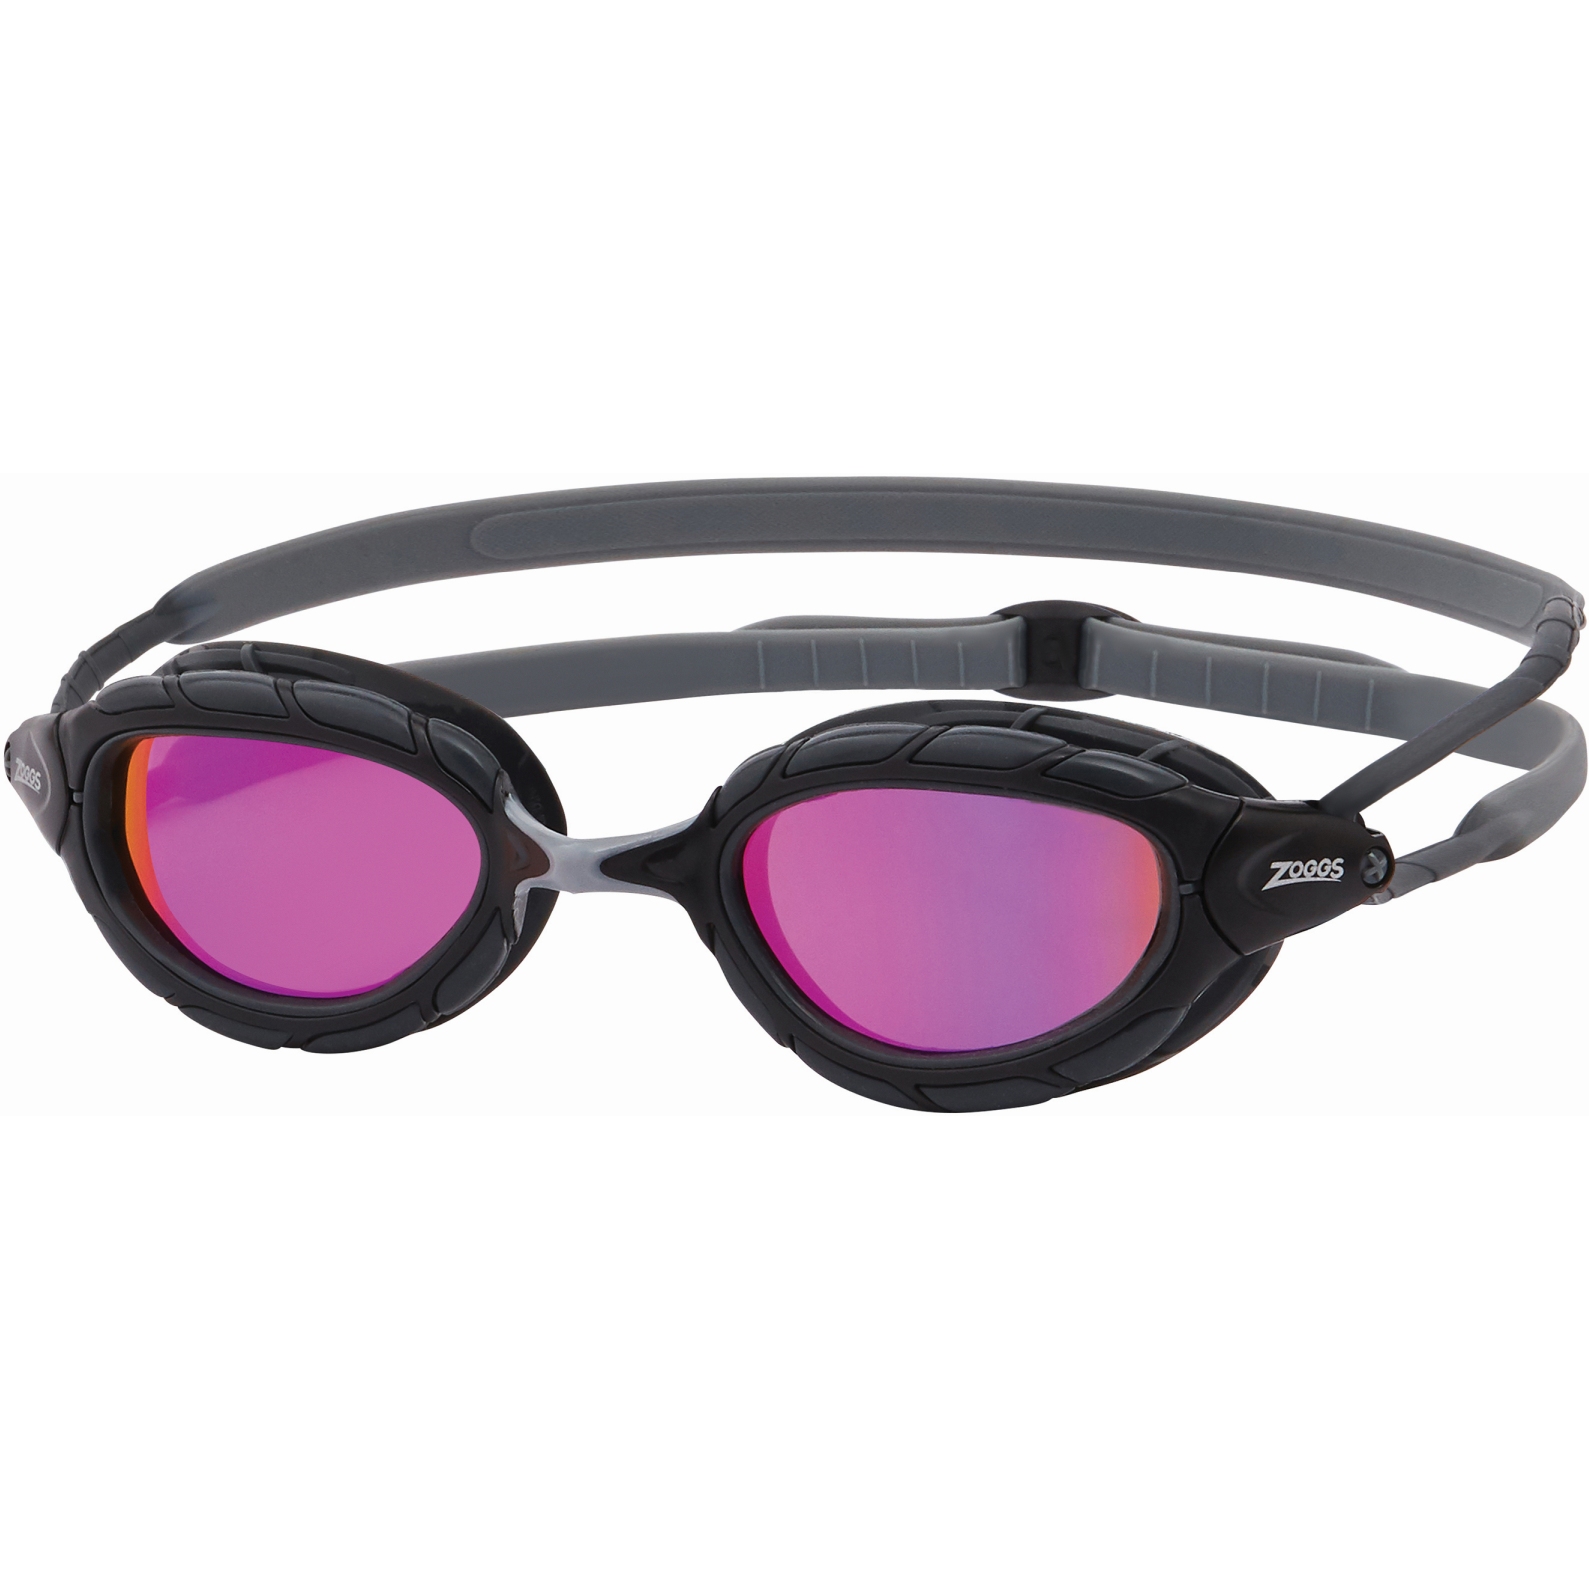 Produktbild von Zoggs Predator Titanium Schwimmbrille - Mirror Pink Lenses - Small Fit - Grey/Black